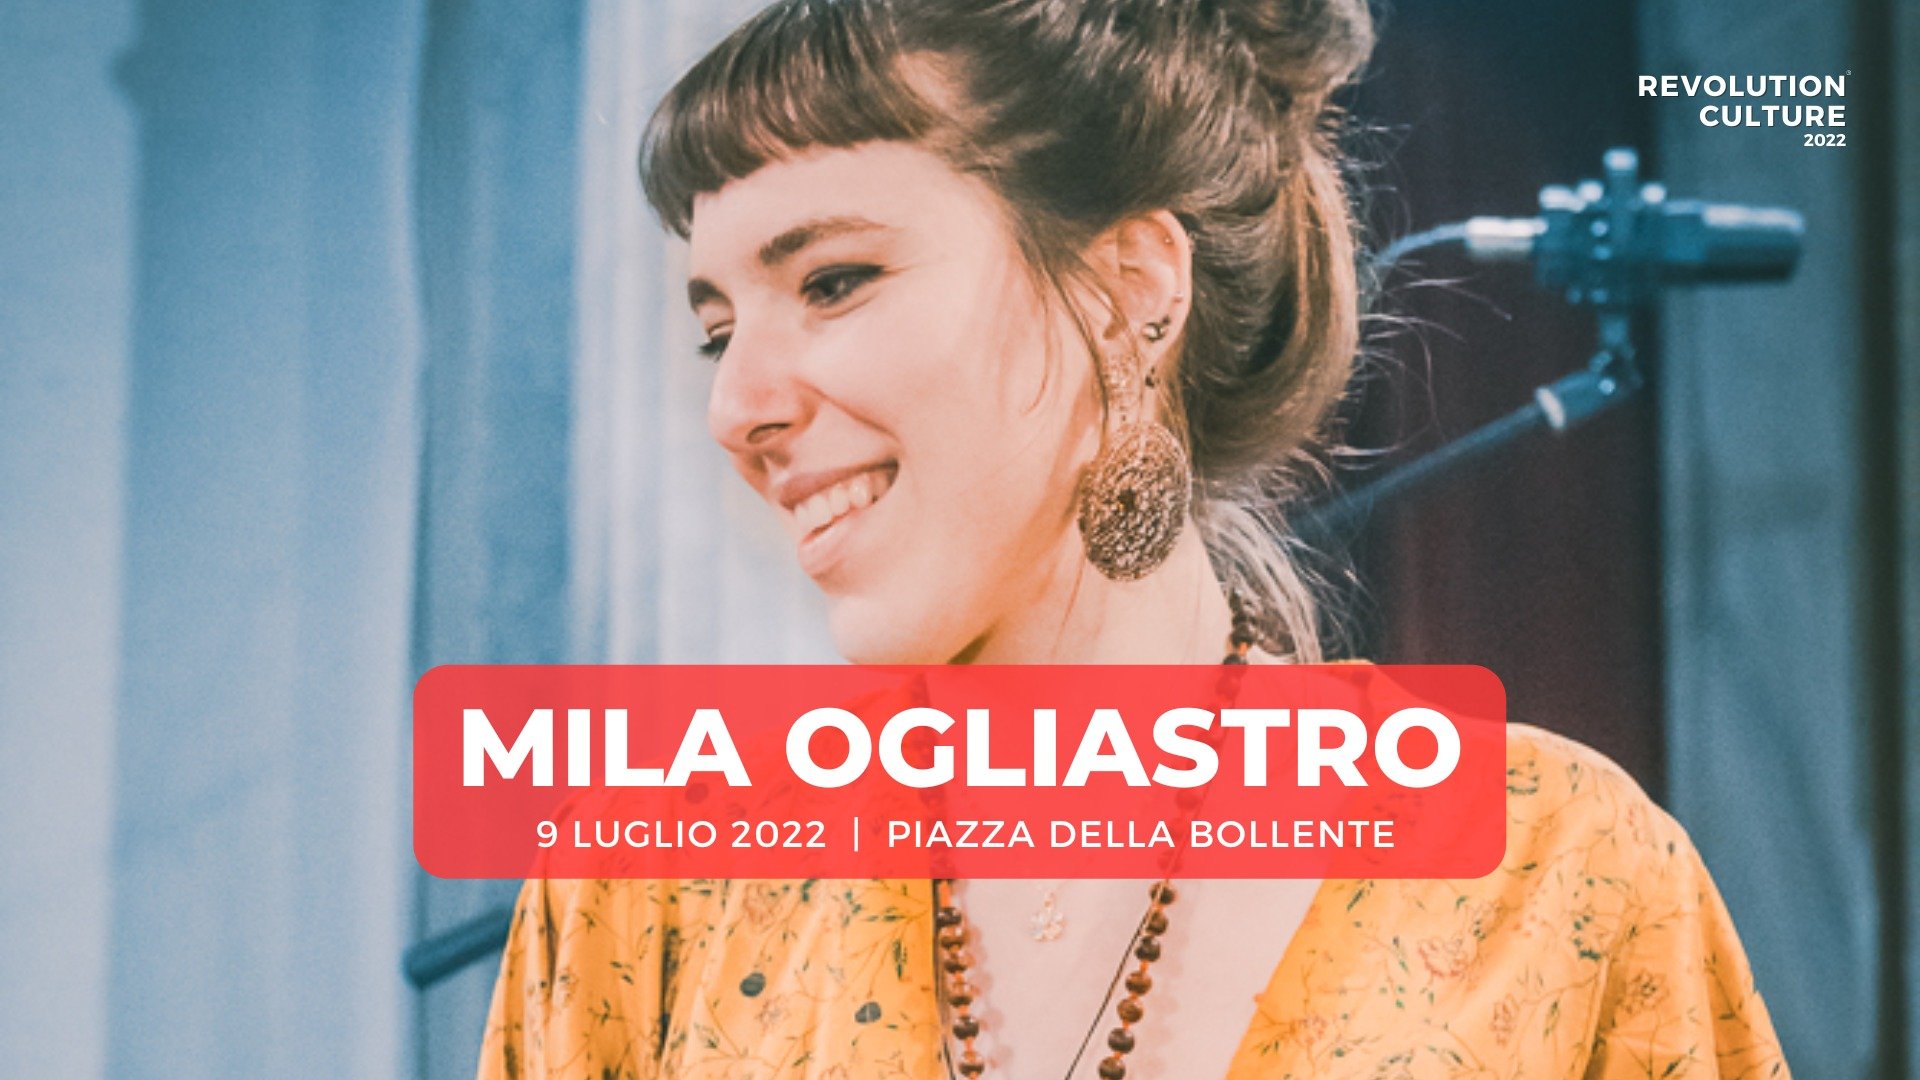 Il 9 luglio i suoni swing di Mila Ogliastro ad Acqui Terme per Revolution Culture